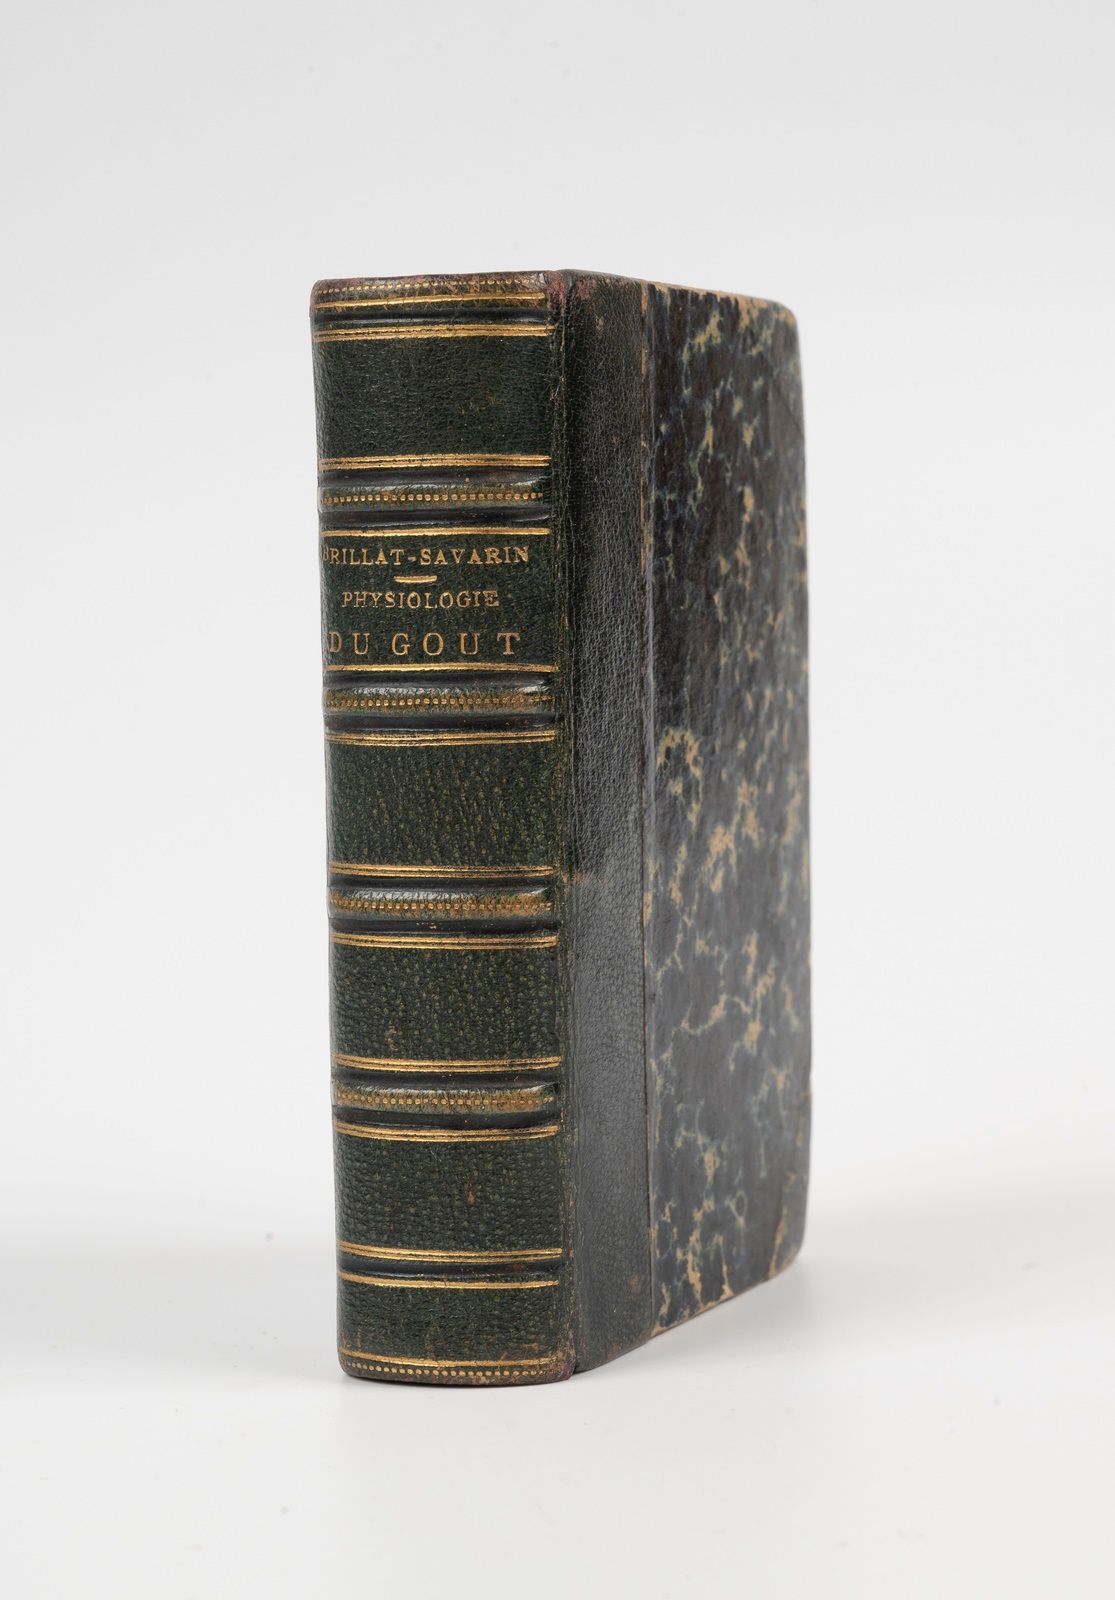 Null brillat-savarin.味觉生理学或超验美食学的沉思。巴黎，帕萨德，1852年。32开本，绿色半旗袍，书脊有装饰，边缘有斑点（当时的装订）。
&hellip;